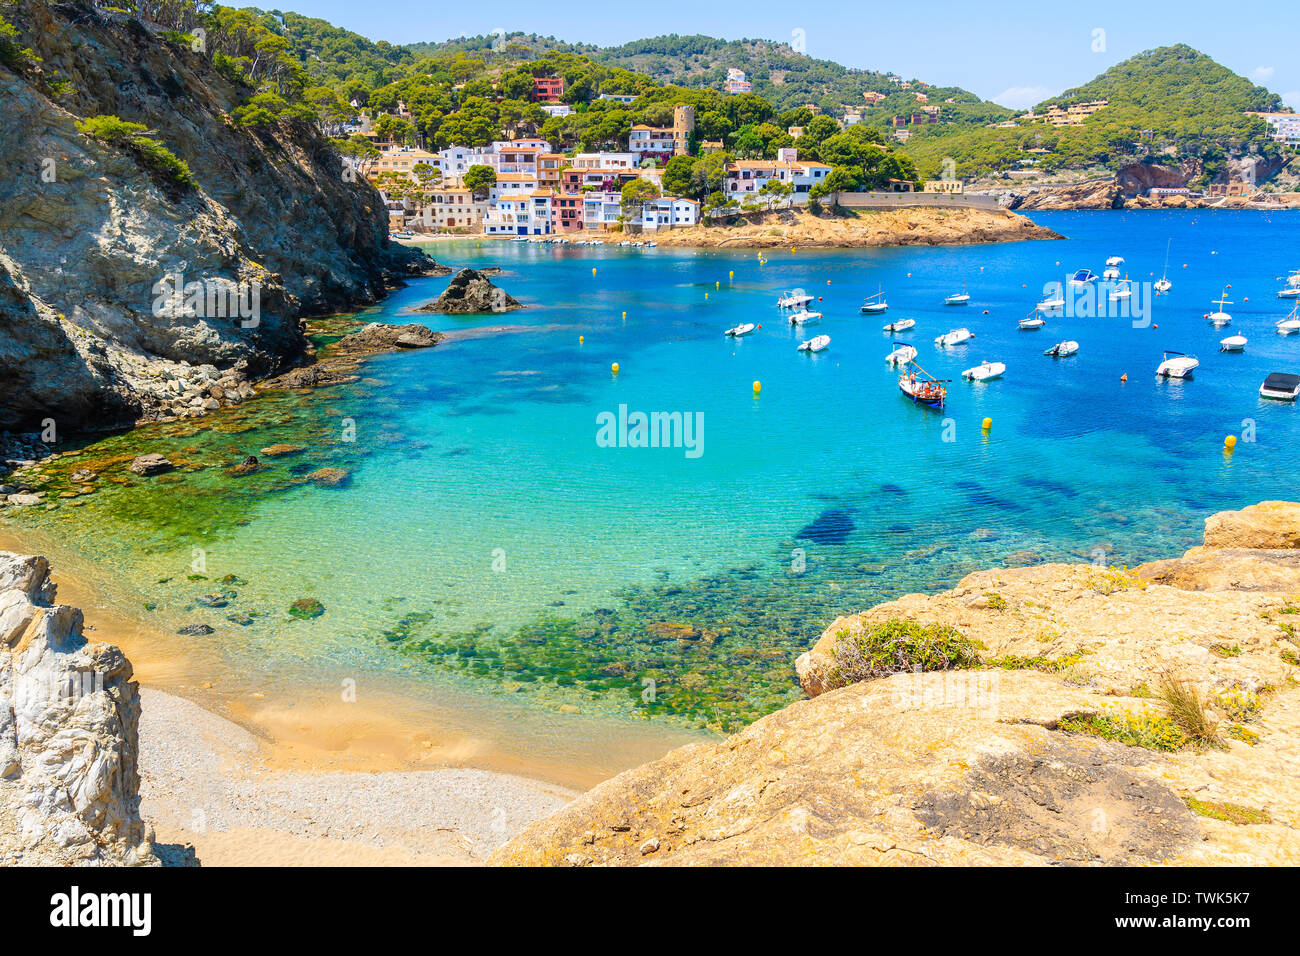 Barche in mare bellissima baia con spiaggia vicino Sa Tuna village, Costa Brava, Spagna Foto Stock